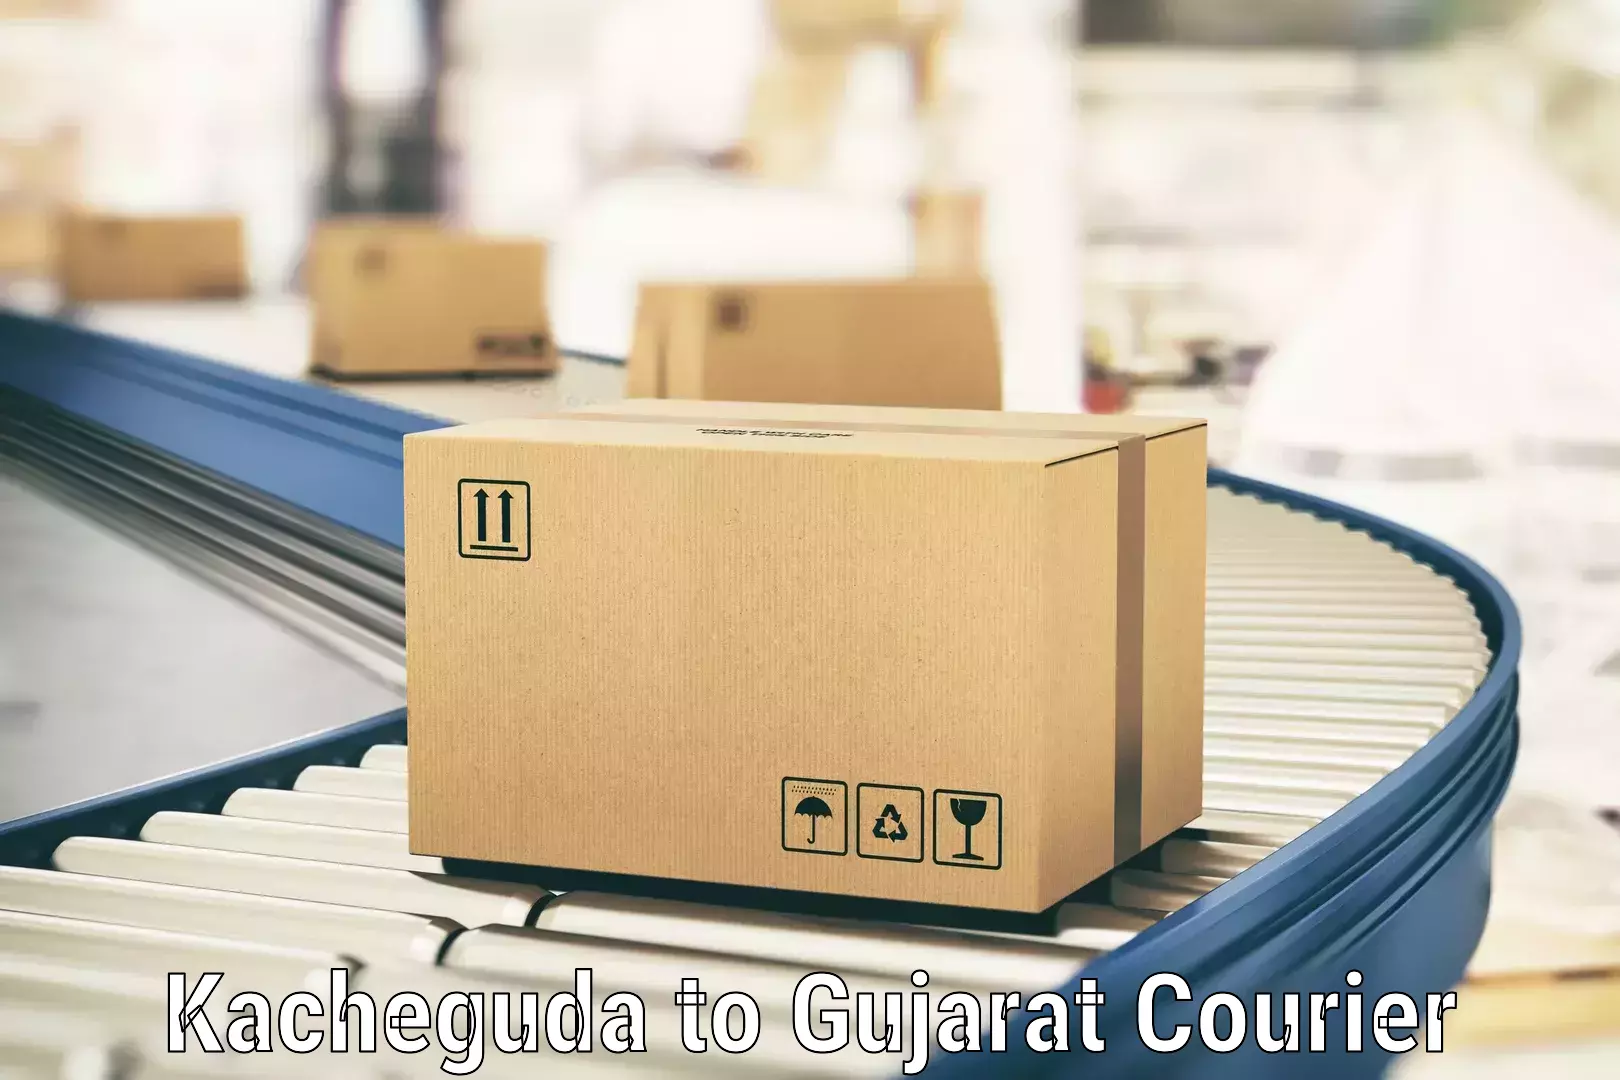 Efficient parcel service Kacheguda to Gandhinagar